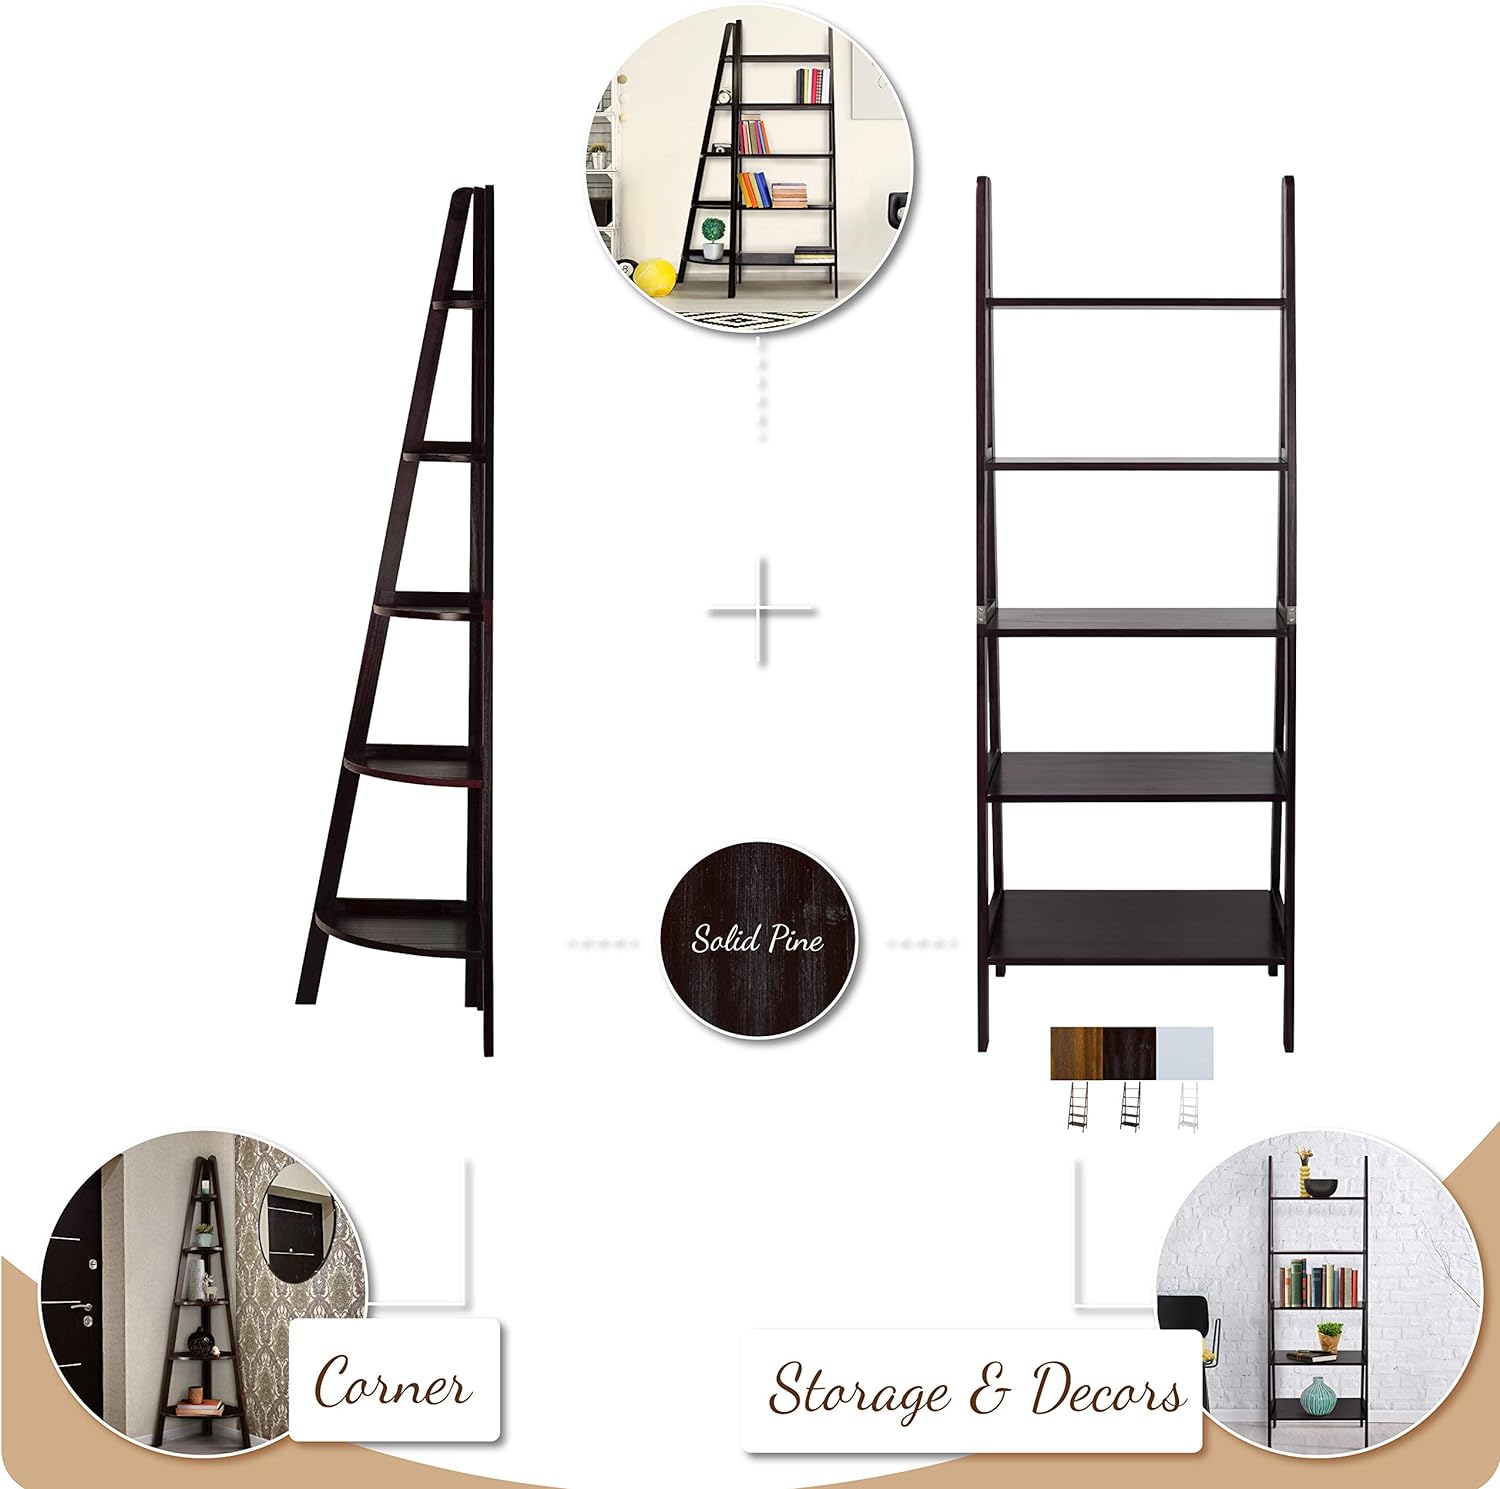 Casual Home 5 Shelf Corner Ladder Bookcase In Espresso Finish 176-33U New